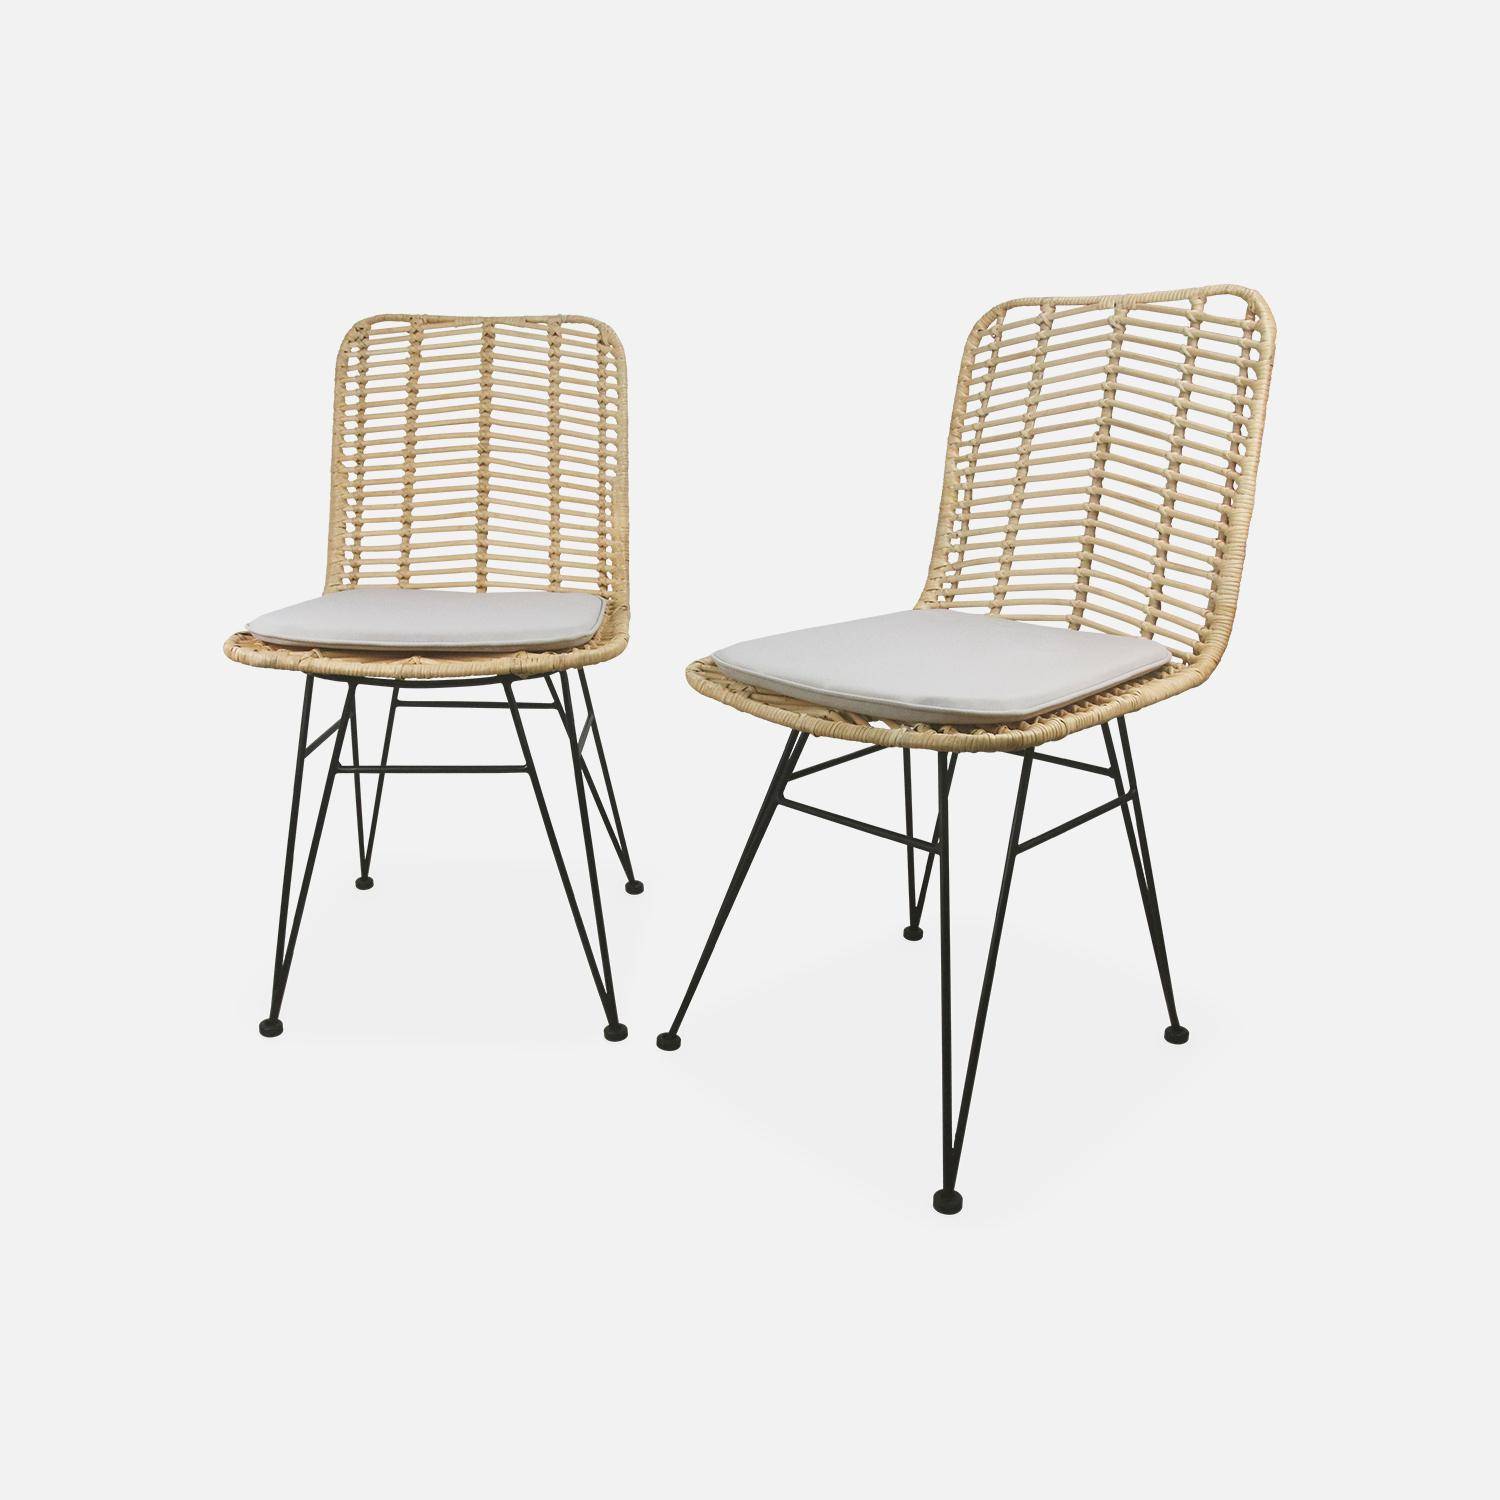 Dos sillas de ratán natural y metal, cojines beige - Cahya,sweeek,Photo3